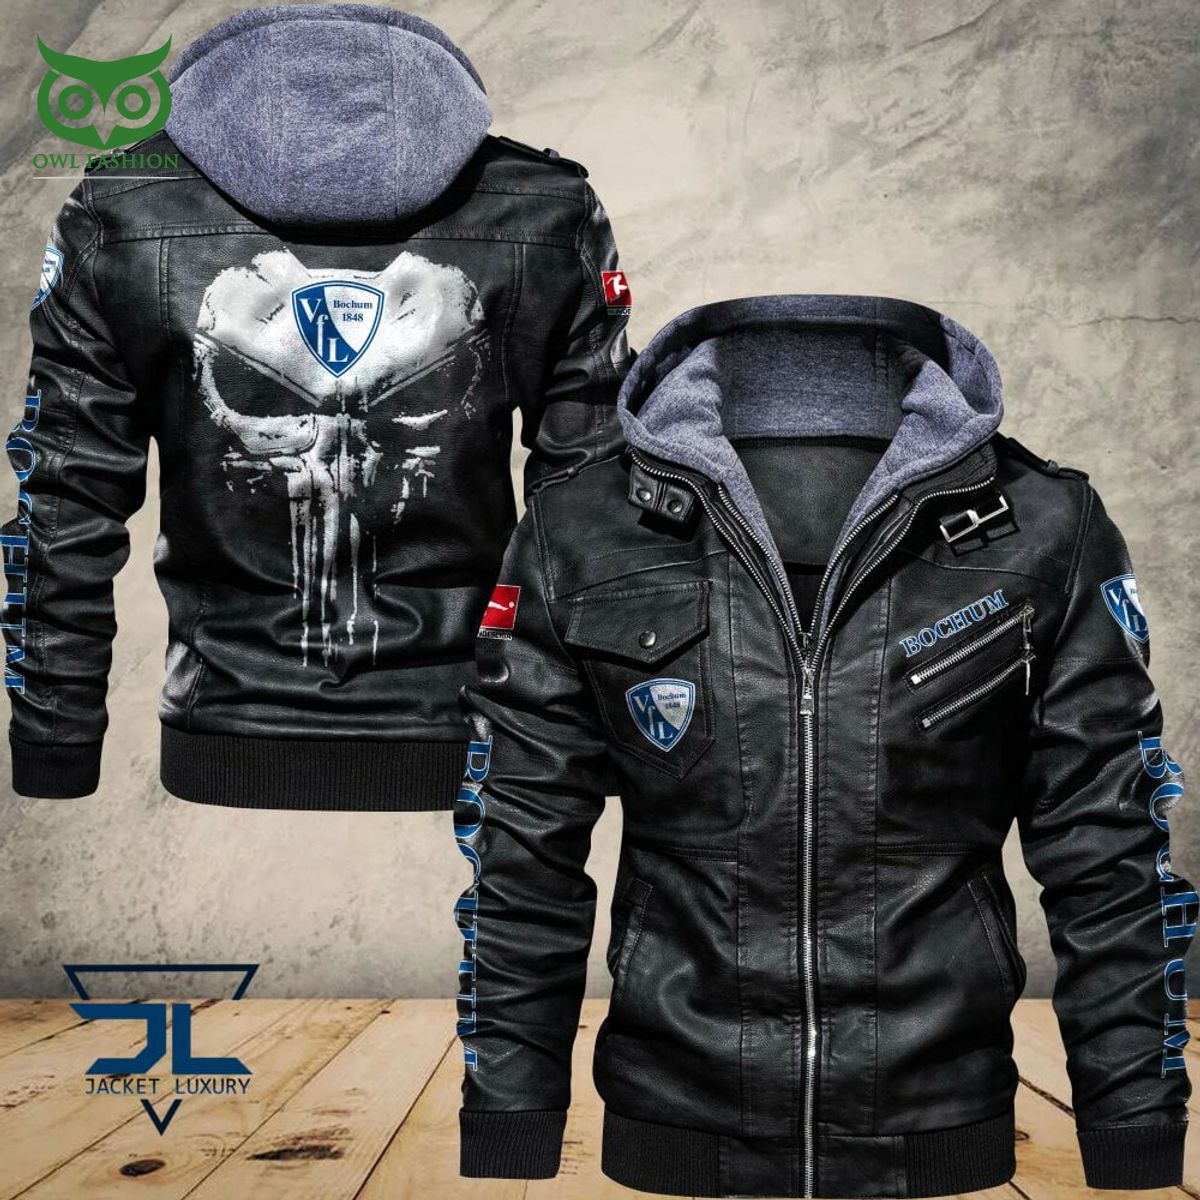 vfl bochum bundesliga germany league 2d leather jacket 1 BCR4Z